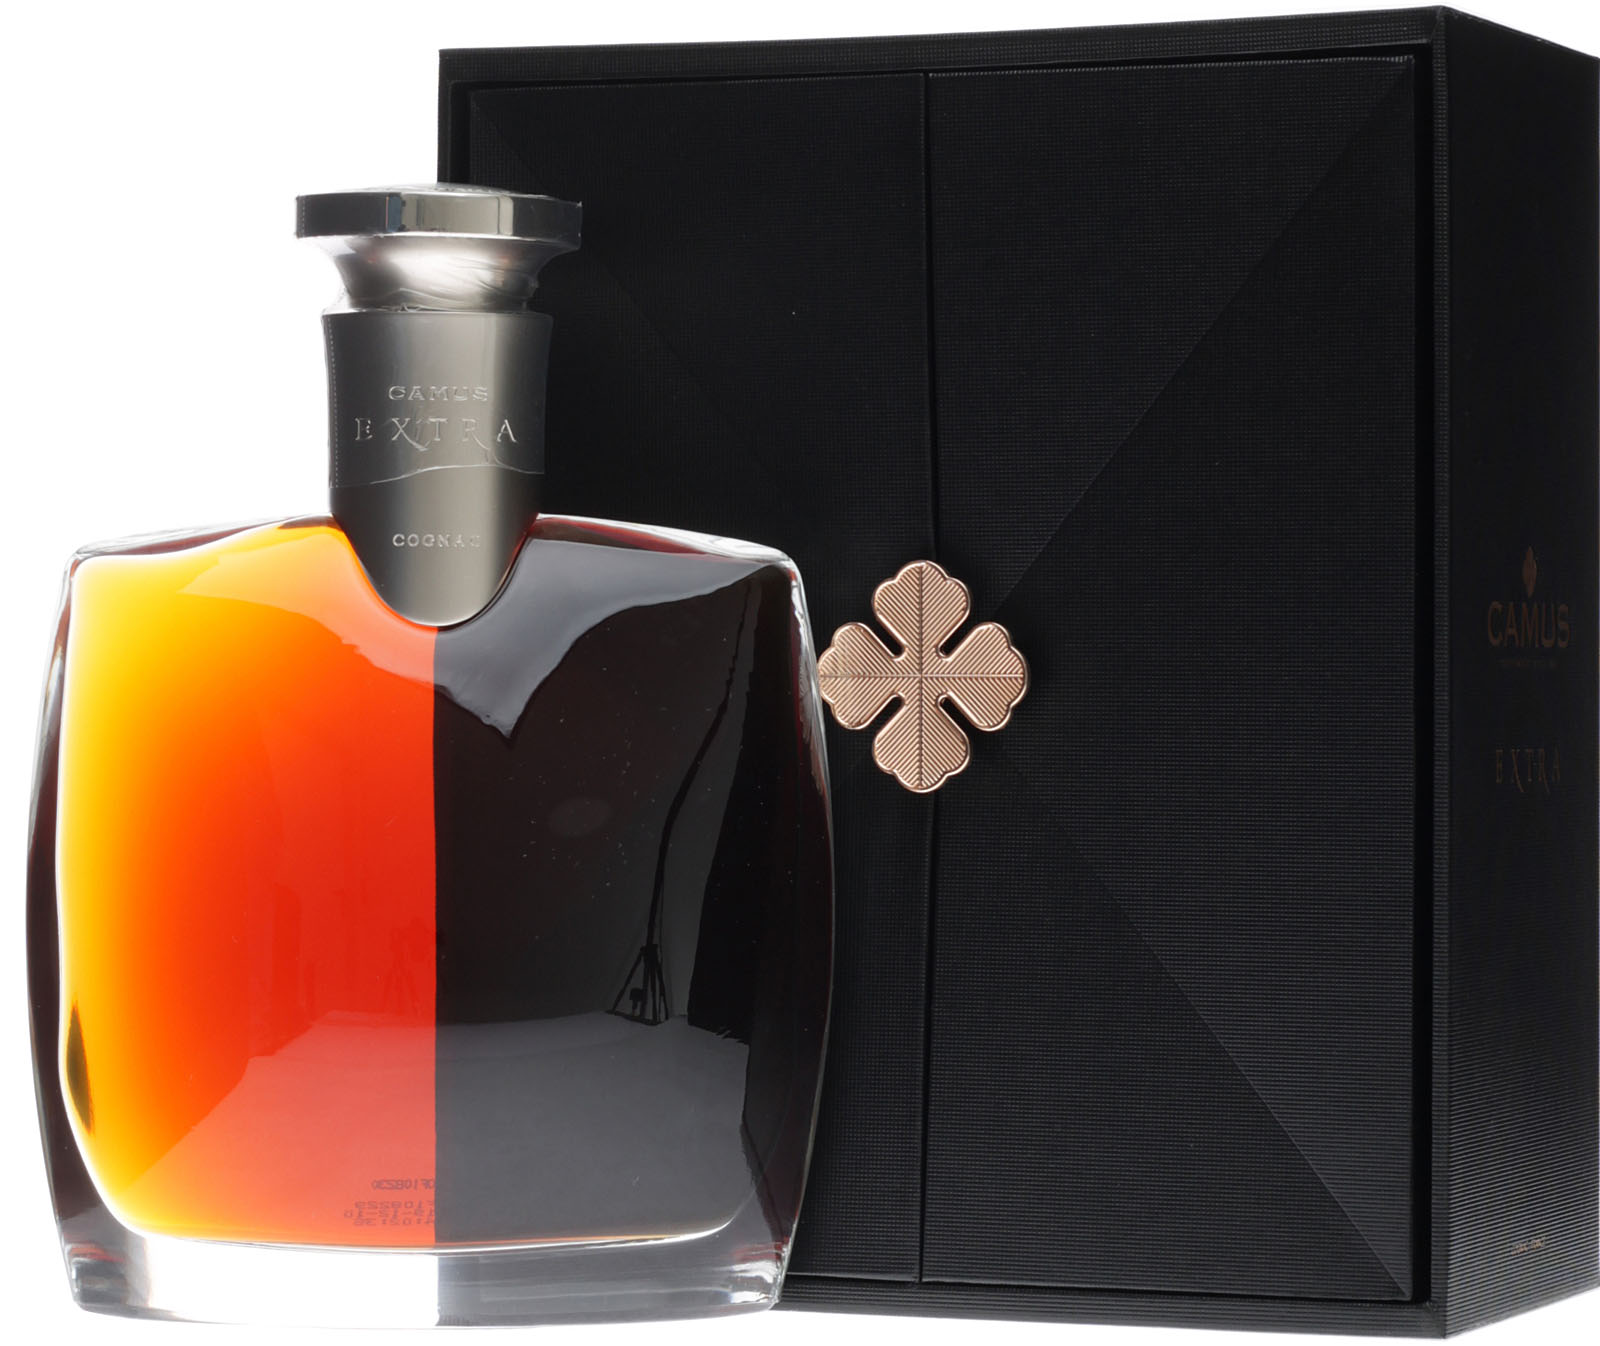 Camus Extra Cognac mit 700 ml und 40 % Vol. hier günsti